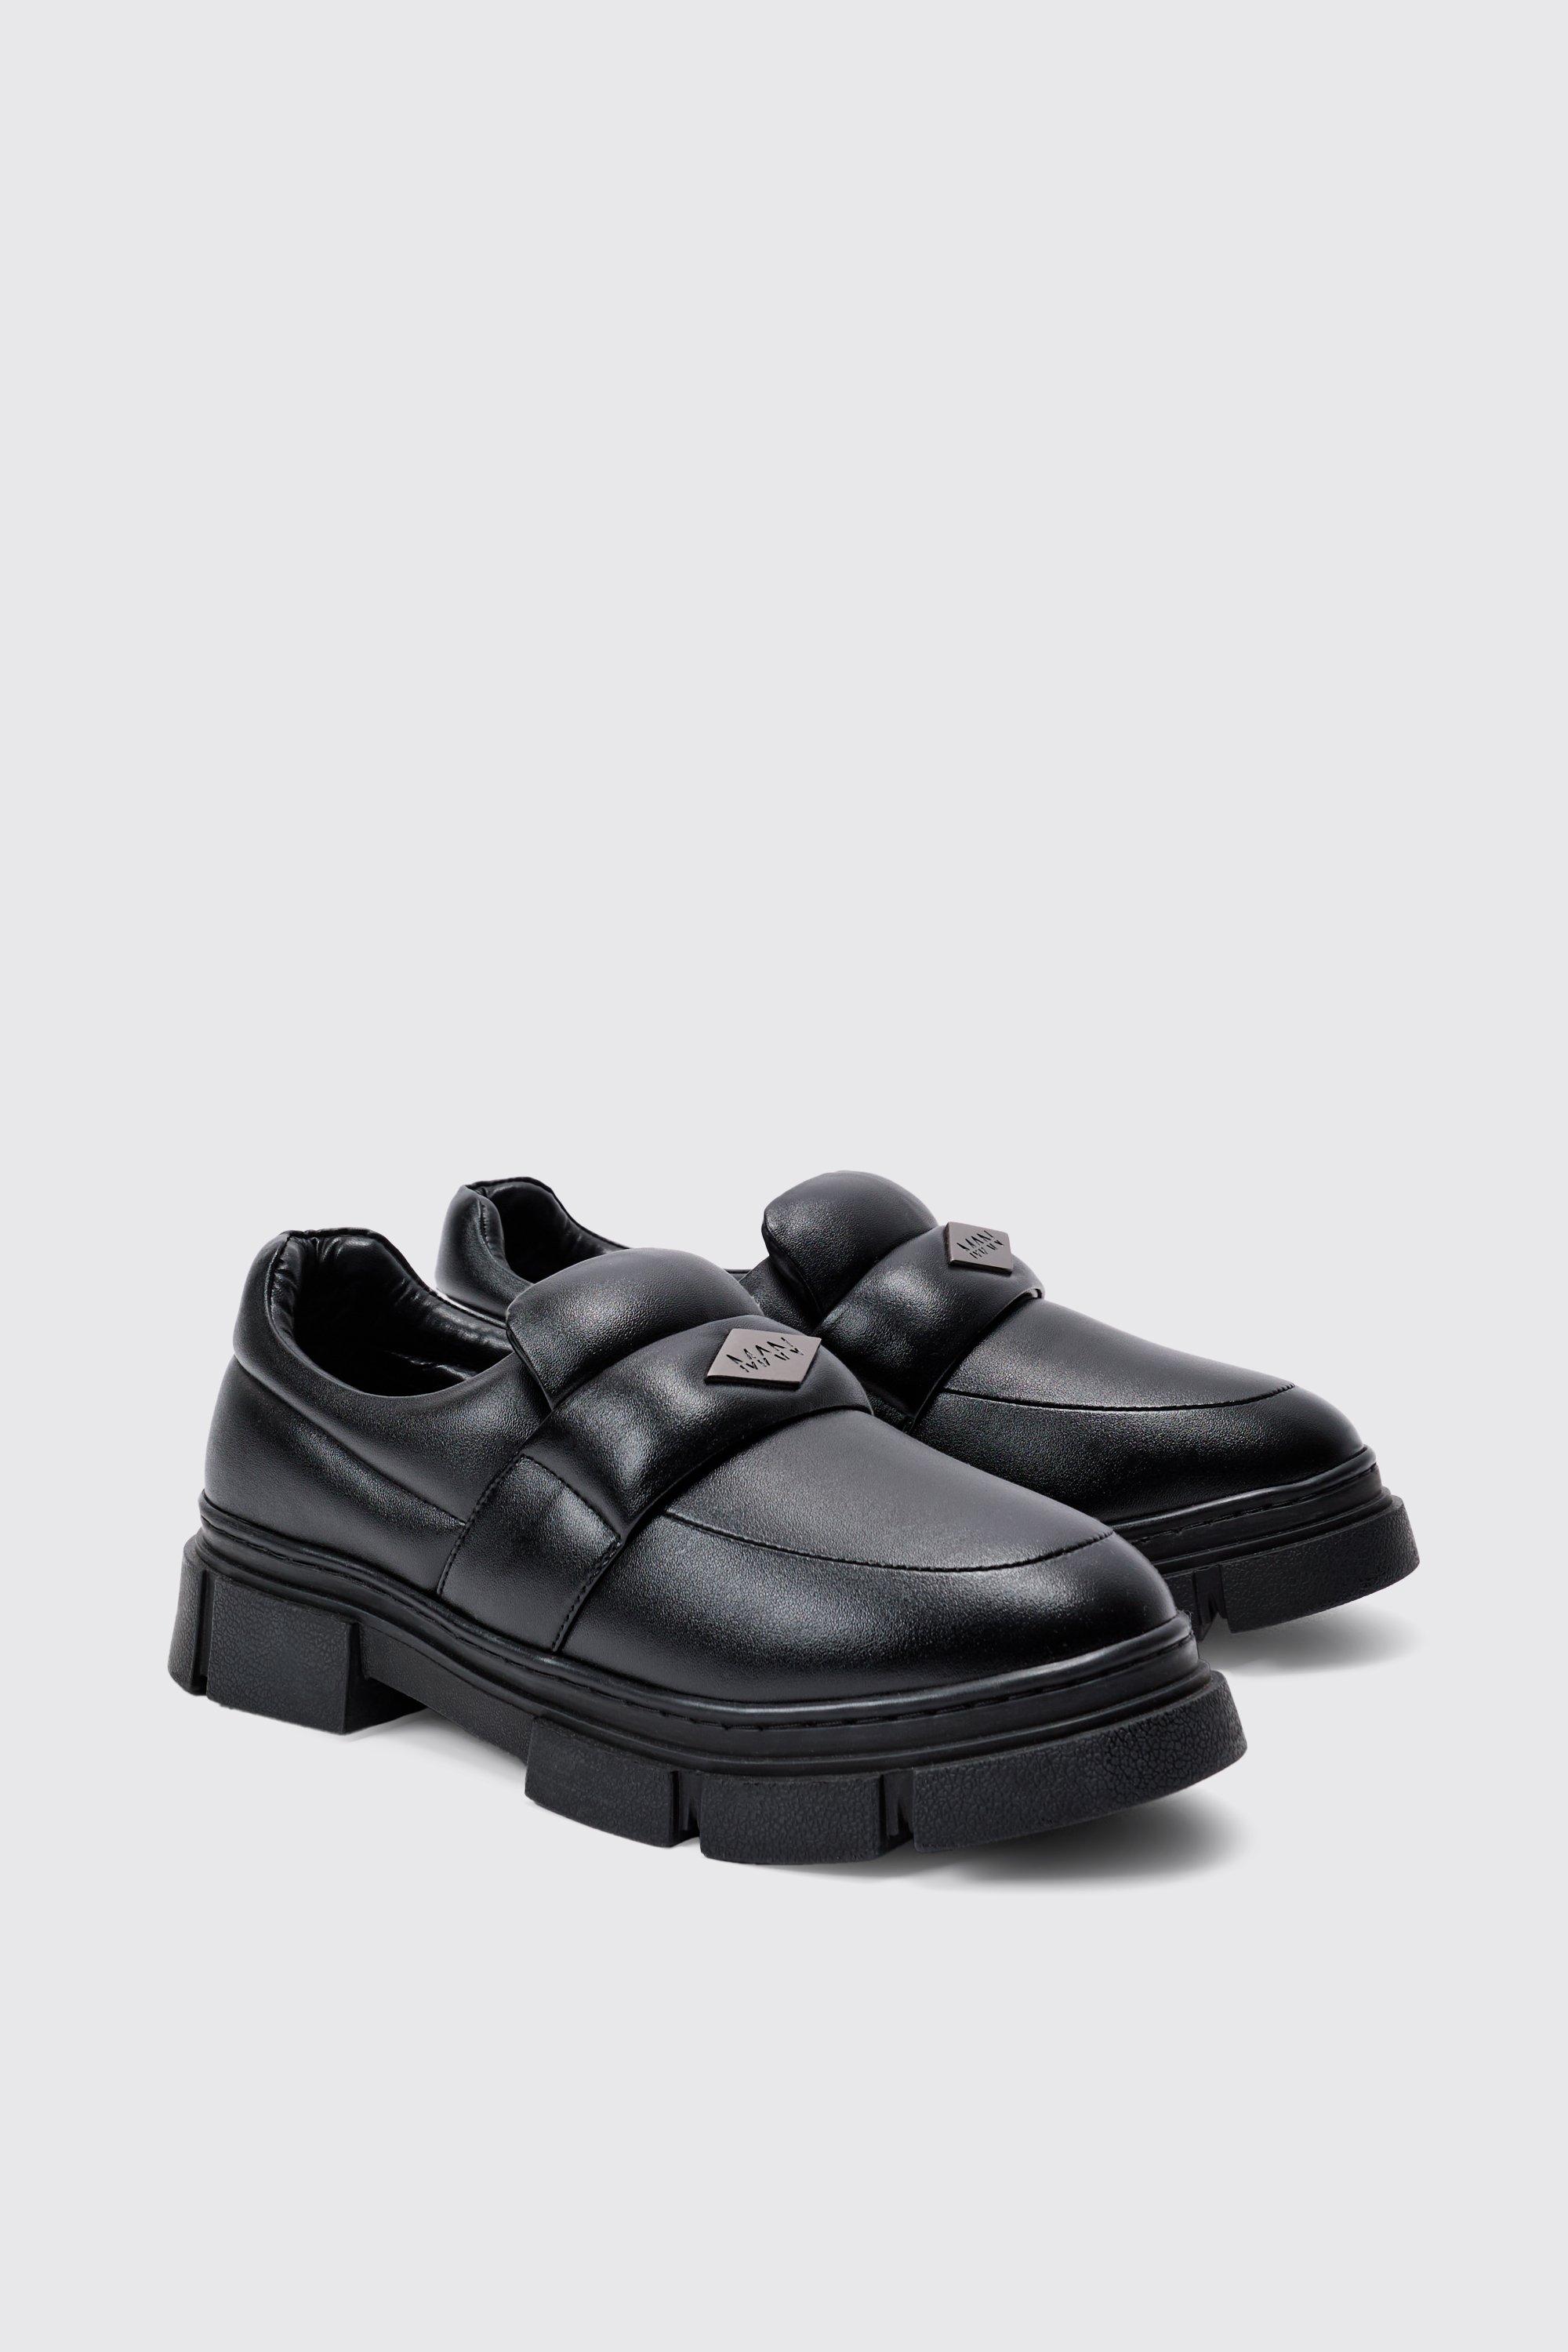 Boohoo Gewatteerde Pu Loafers In Zwart, Black